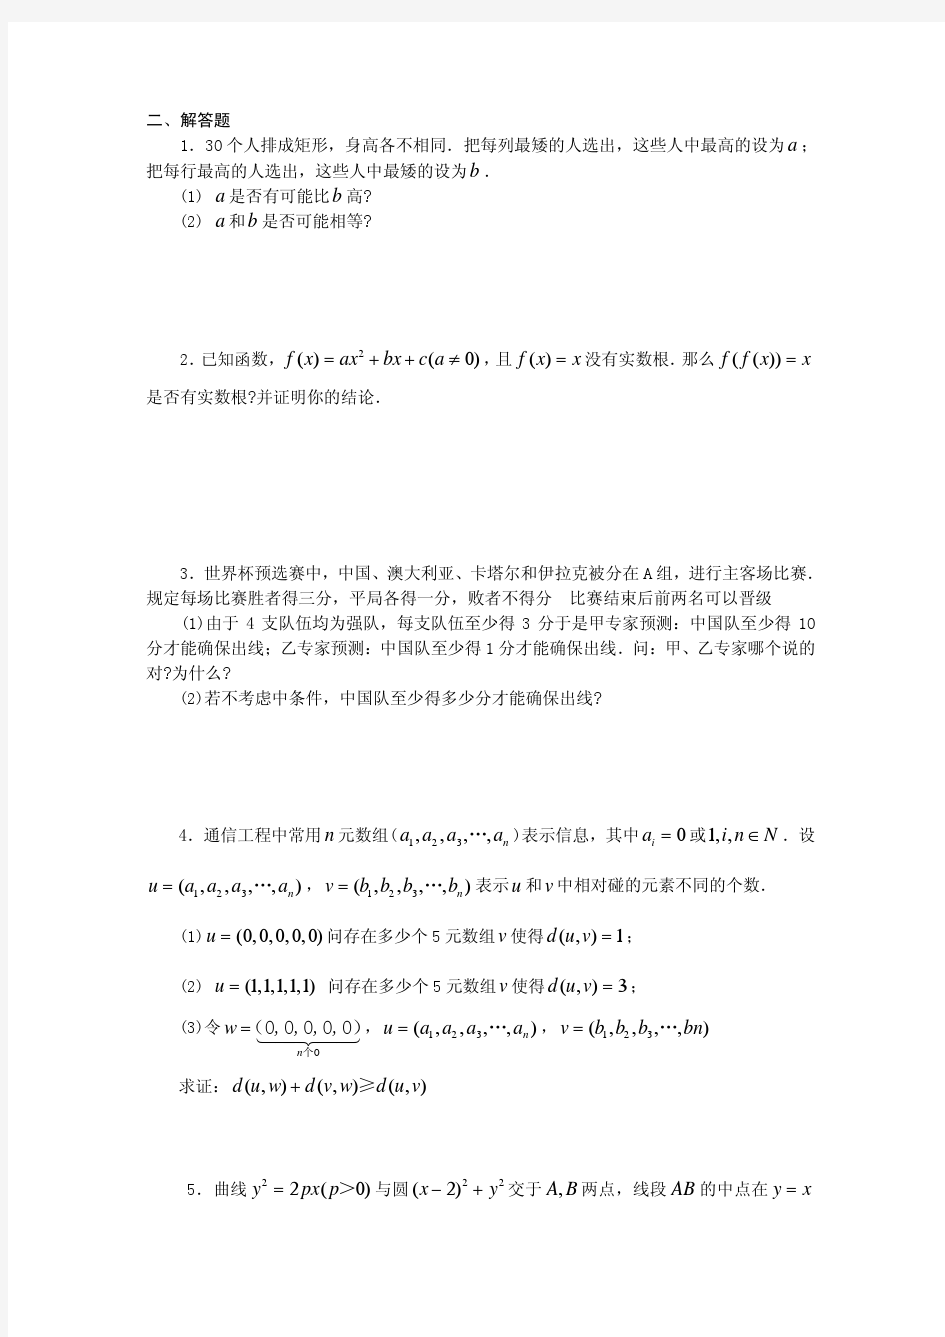 2008年上海交通大学自主招生选拔测试试卷(数学篇)